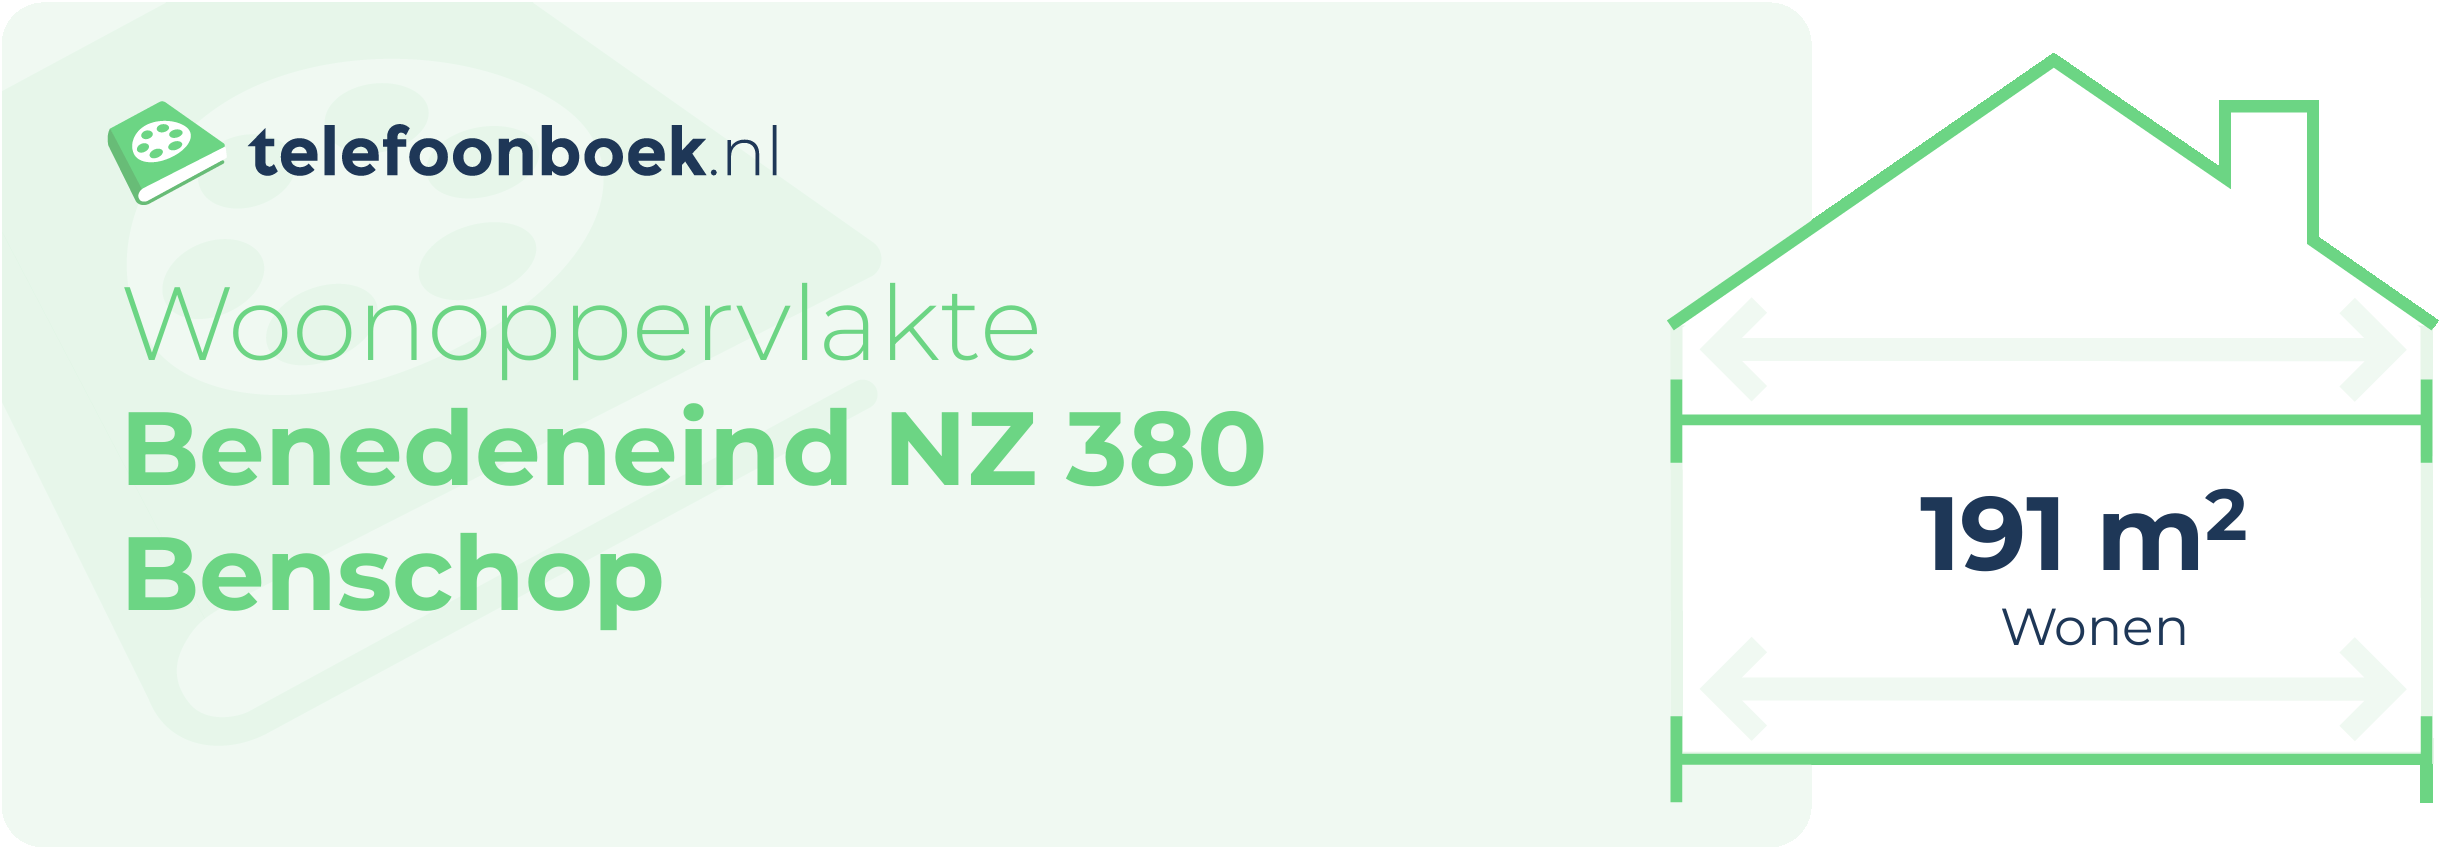 Woonoppervlakte Benedeneind NZ 380 Benschop